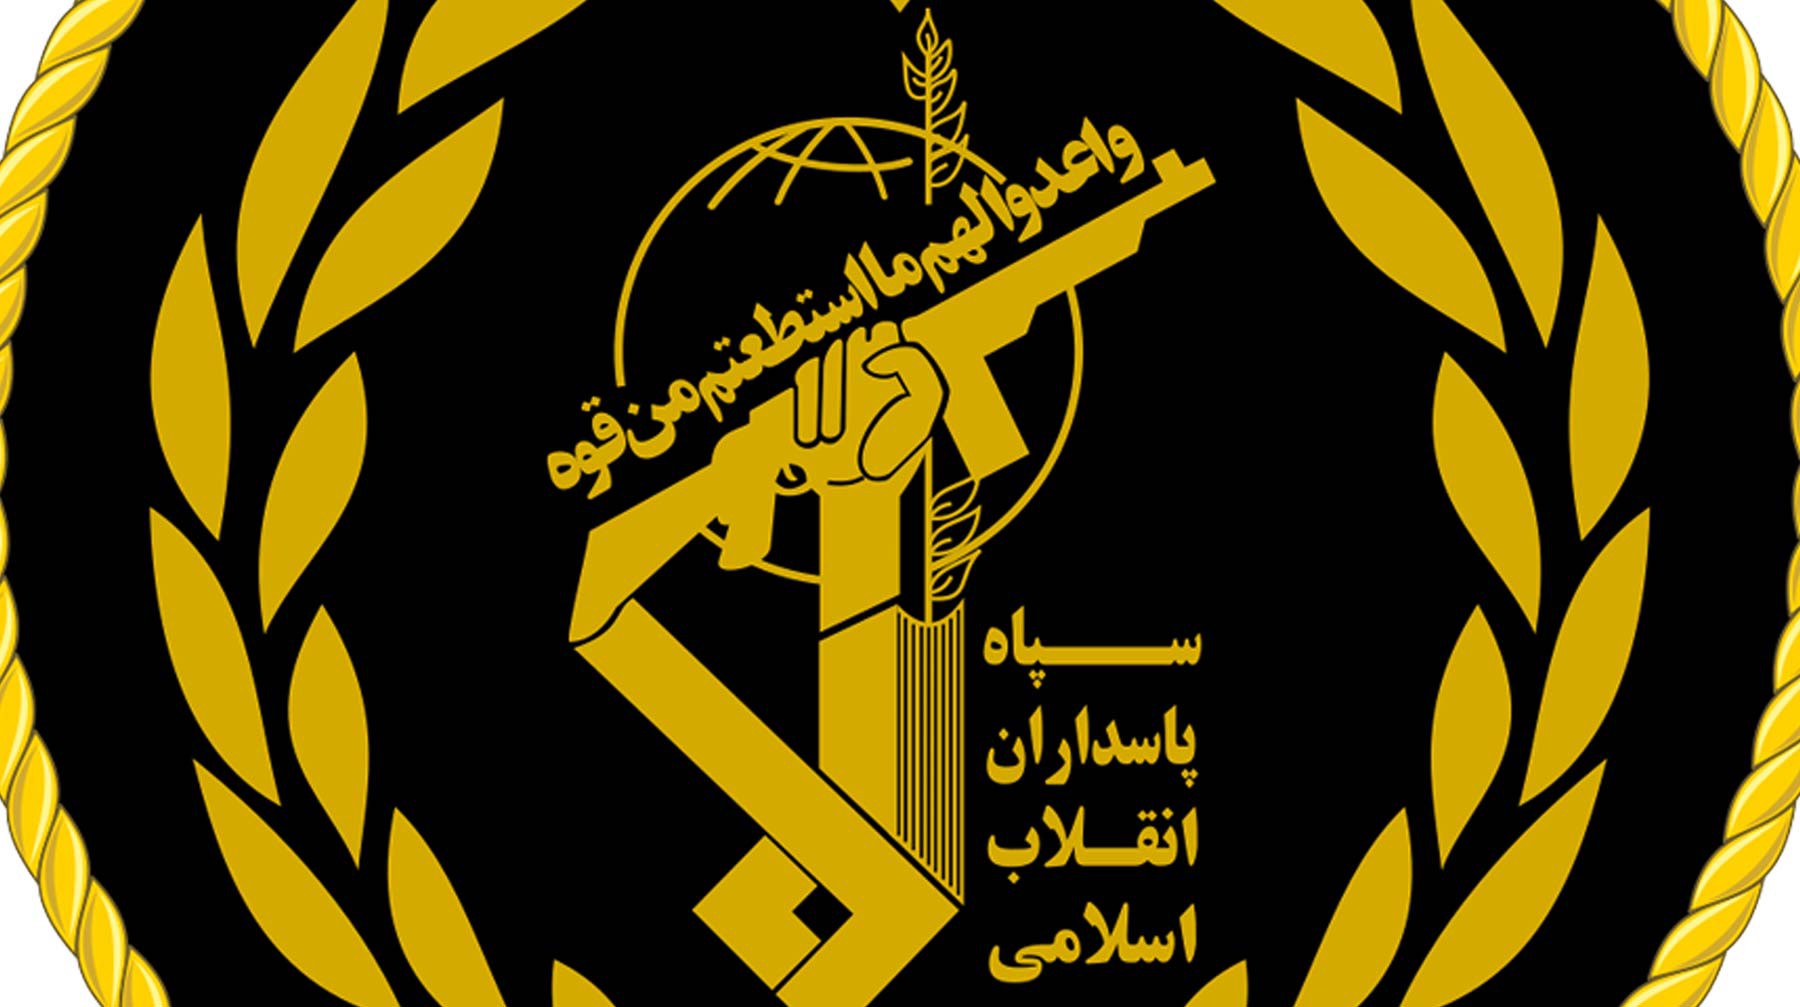 Dailystorm - США признают иранский Корпус стражей Исламской революции террористической организацией